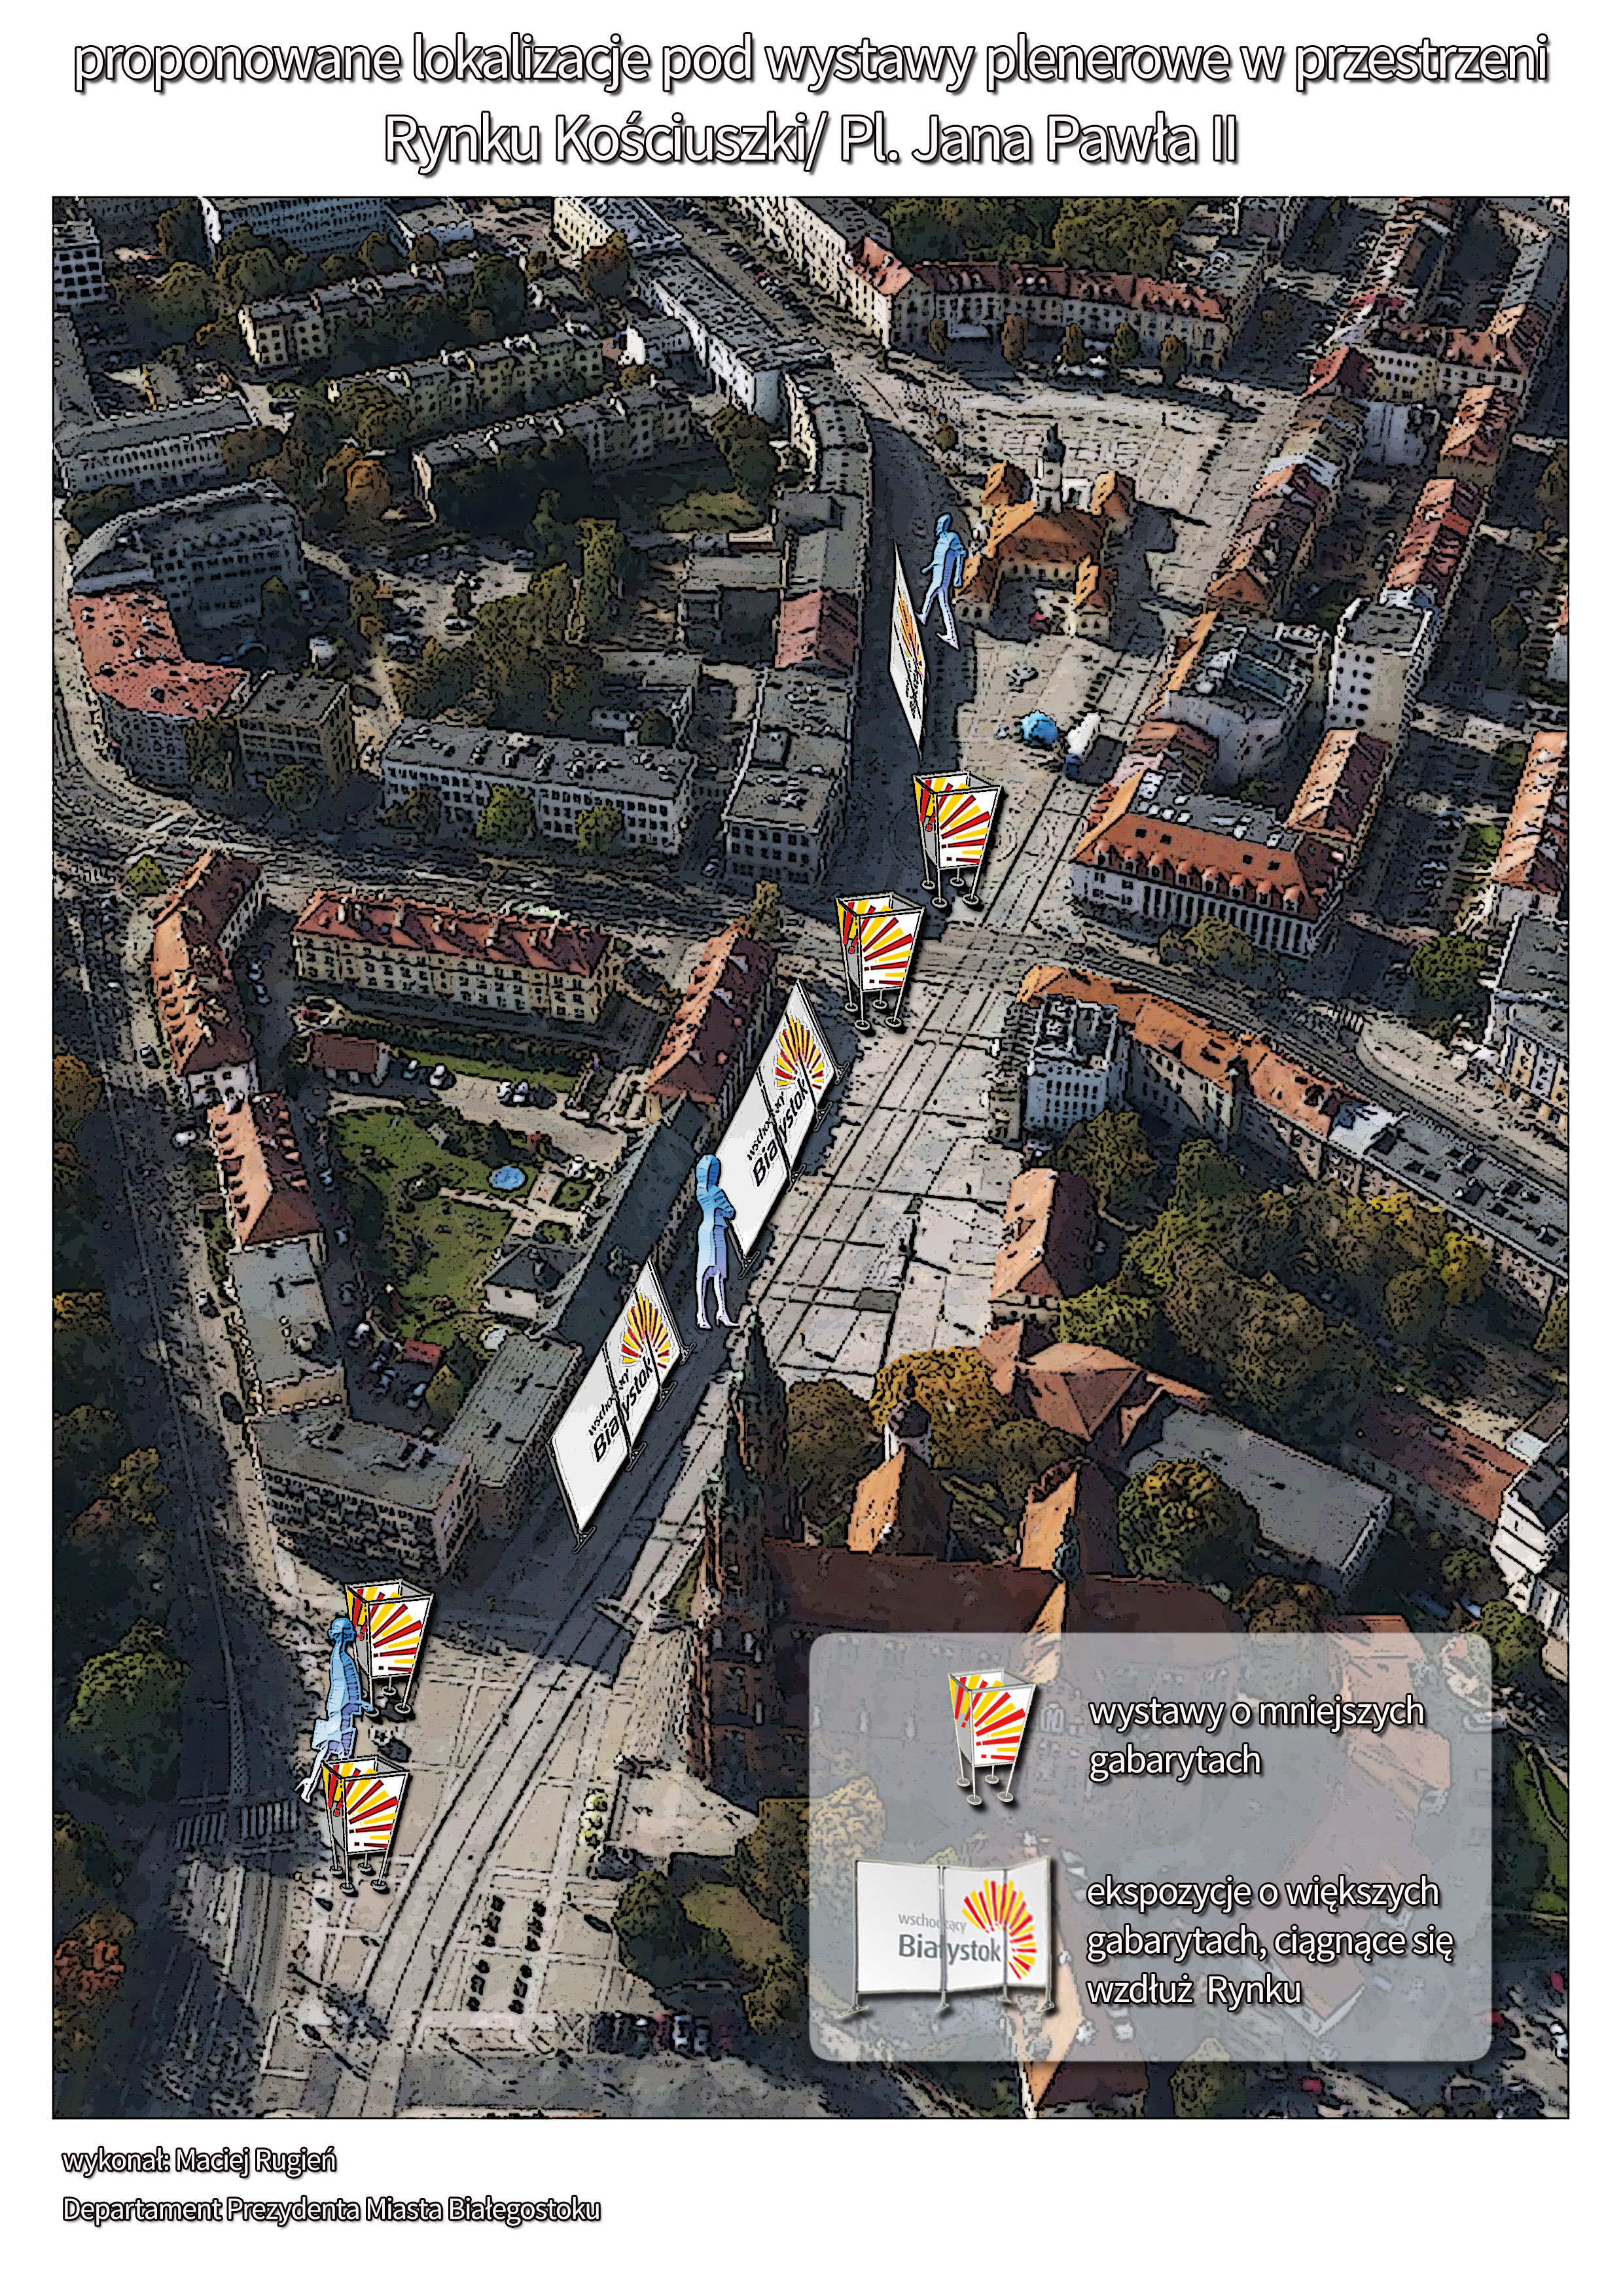 proponowane ustawienia ekspozycji plenerowych w przestrzeni Rynku Kościuszki/pl. Jana Pawła II